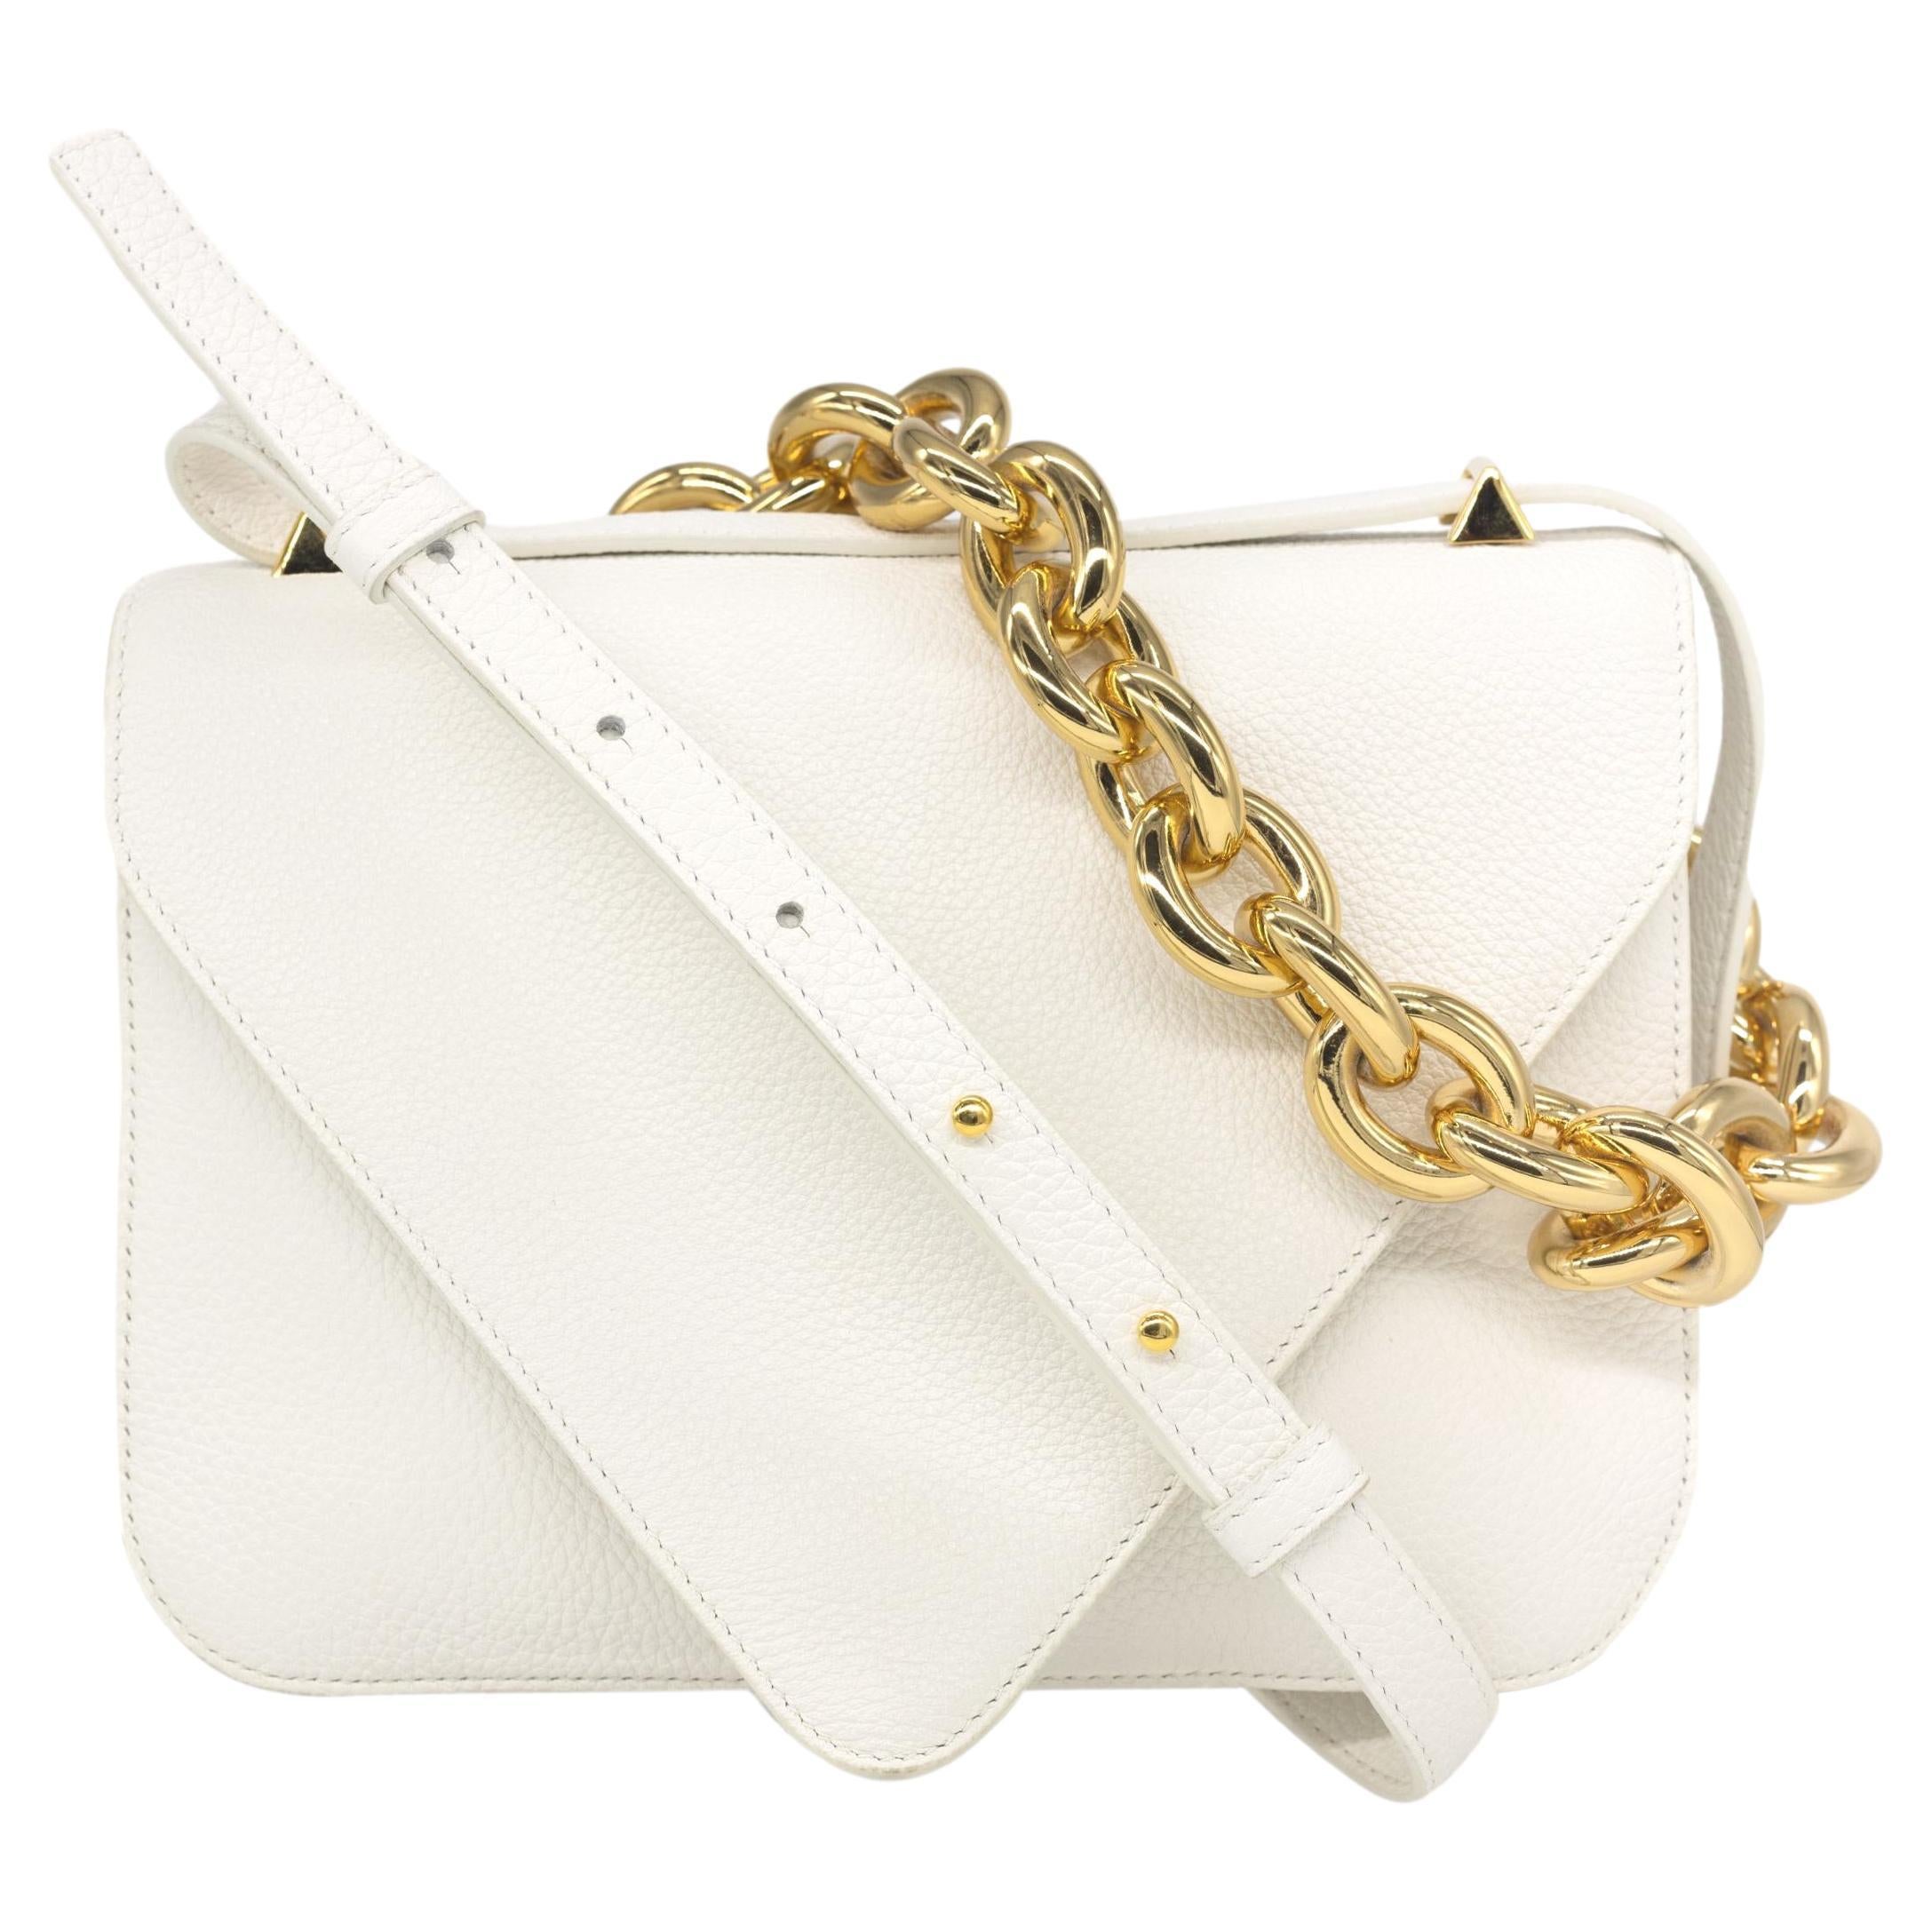 Bottega Veneta Mount Envelope Small White Leather Top Handle Crossbody Bag, 2021. Dieses zeitgenössische Modestück wurde für die Herbstlinie 2021 